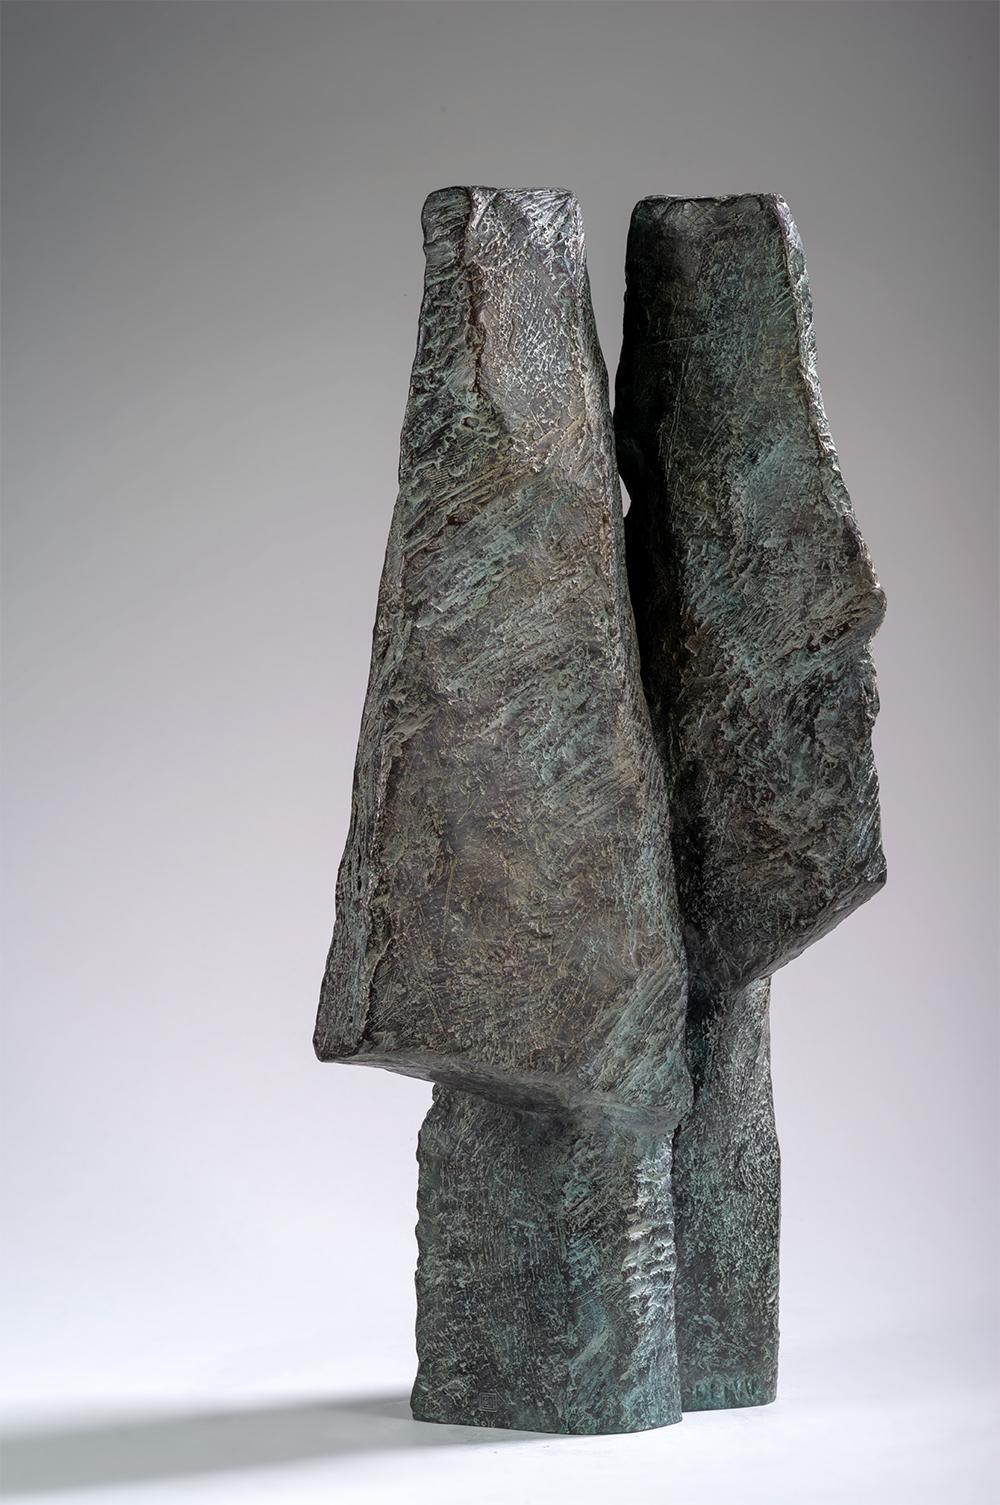 Janus Heads ist eine Bronzeskulptur der französischen Künstlerin Martine Demal mit den Maßen 54 × 26 × 17 cm (21,3 × 10,2 × 6,7 in). 
Die Skulptur ist signiert und nummeriert, gehört zu einer limitierten Auflage von 8 Exemplaren + 4 Künstlerabzügen